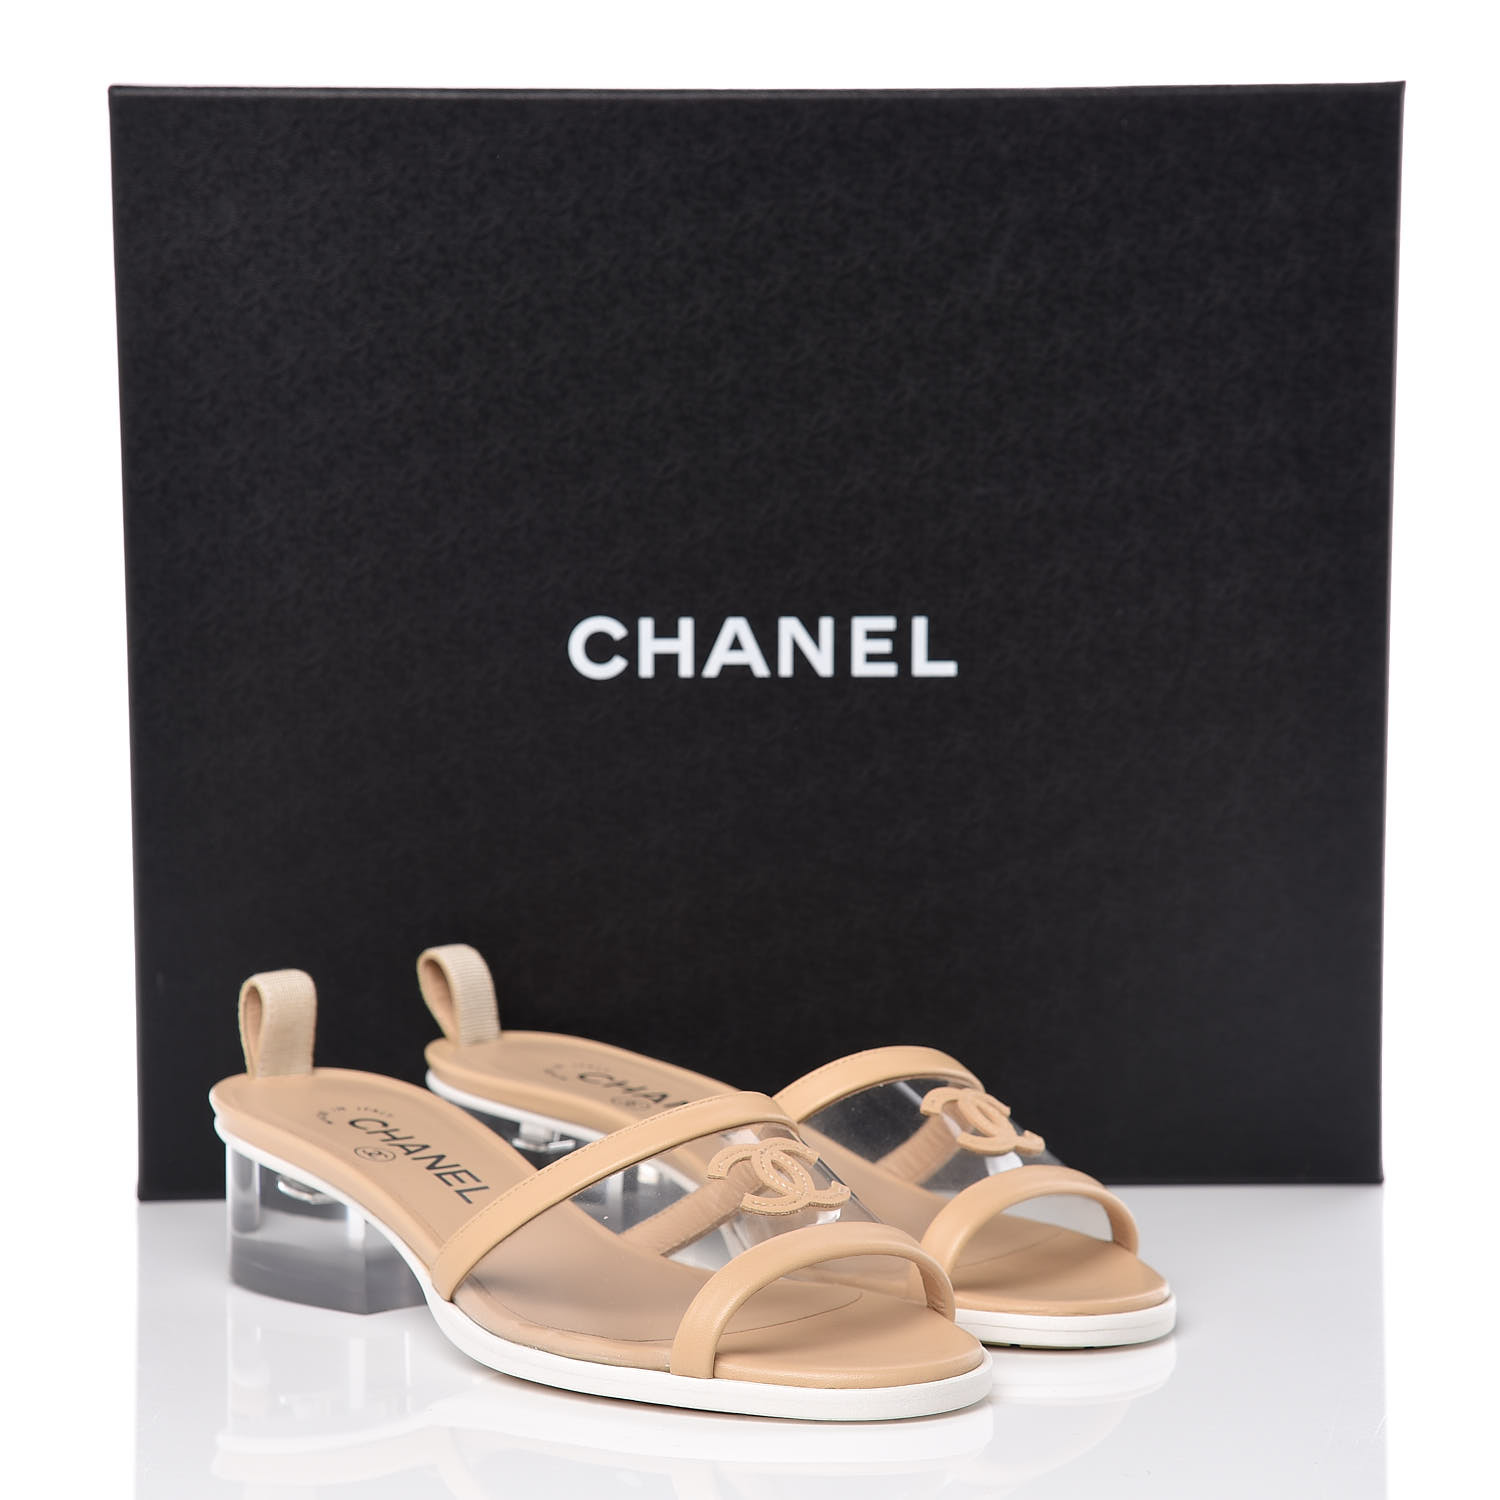 chanel pvc sandals 2019